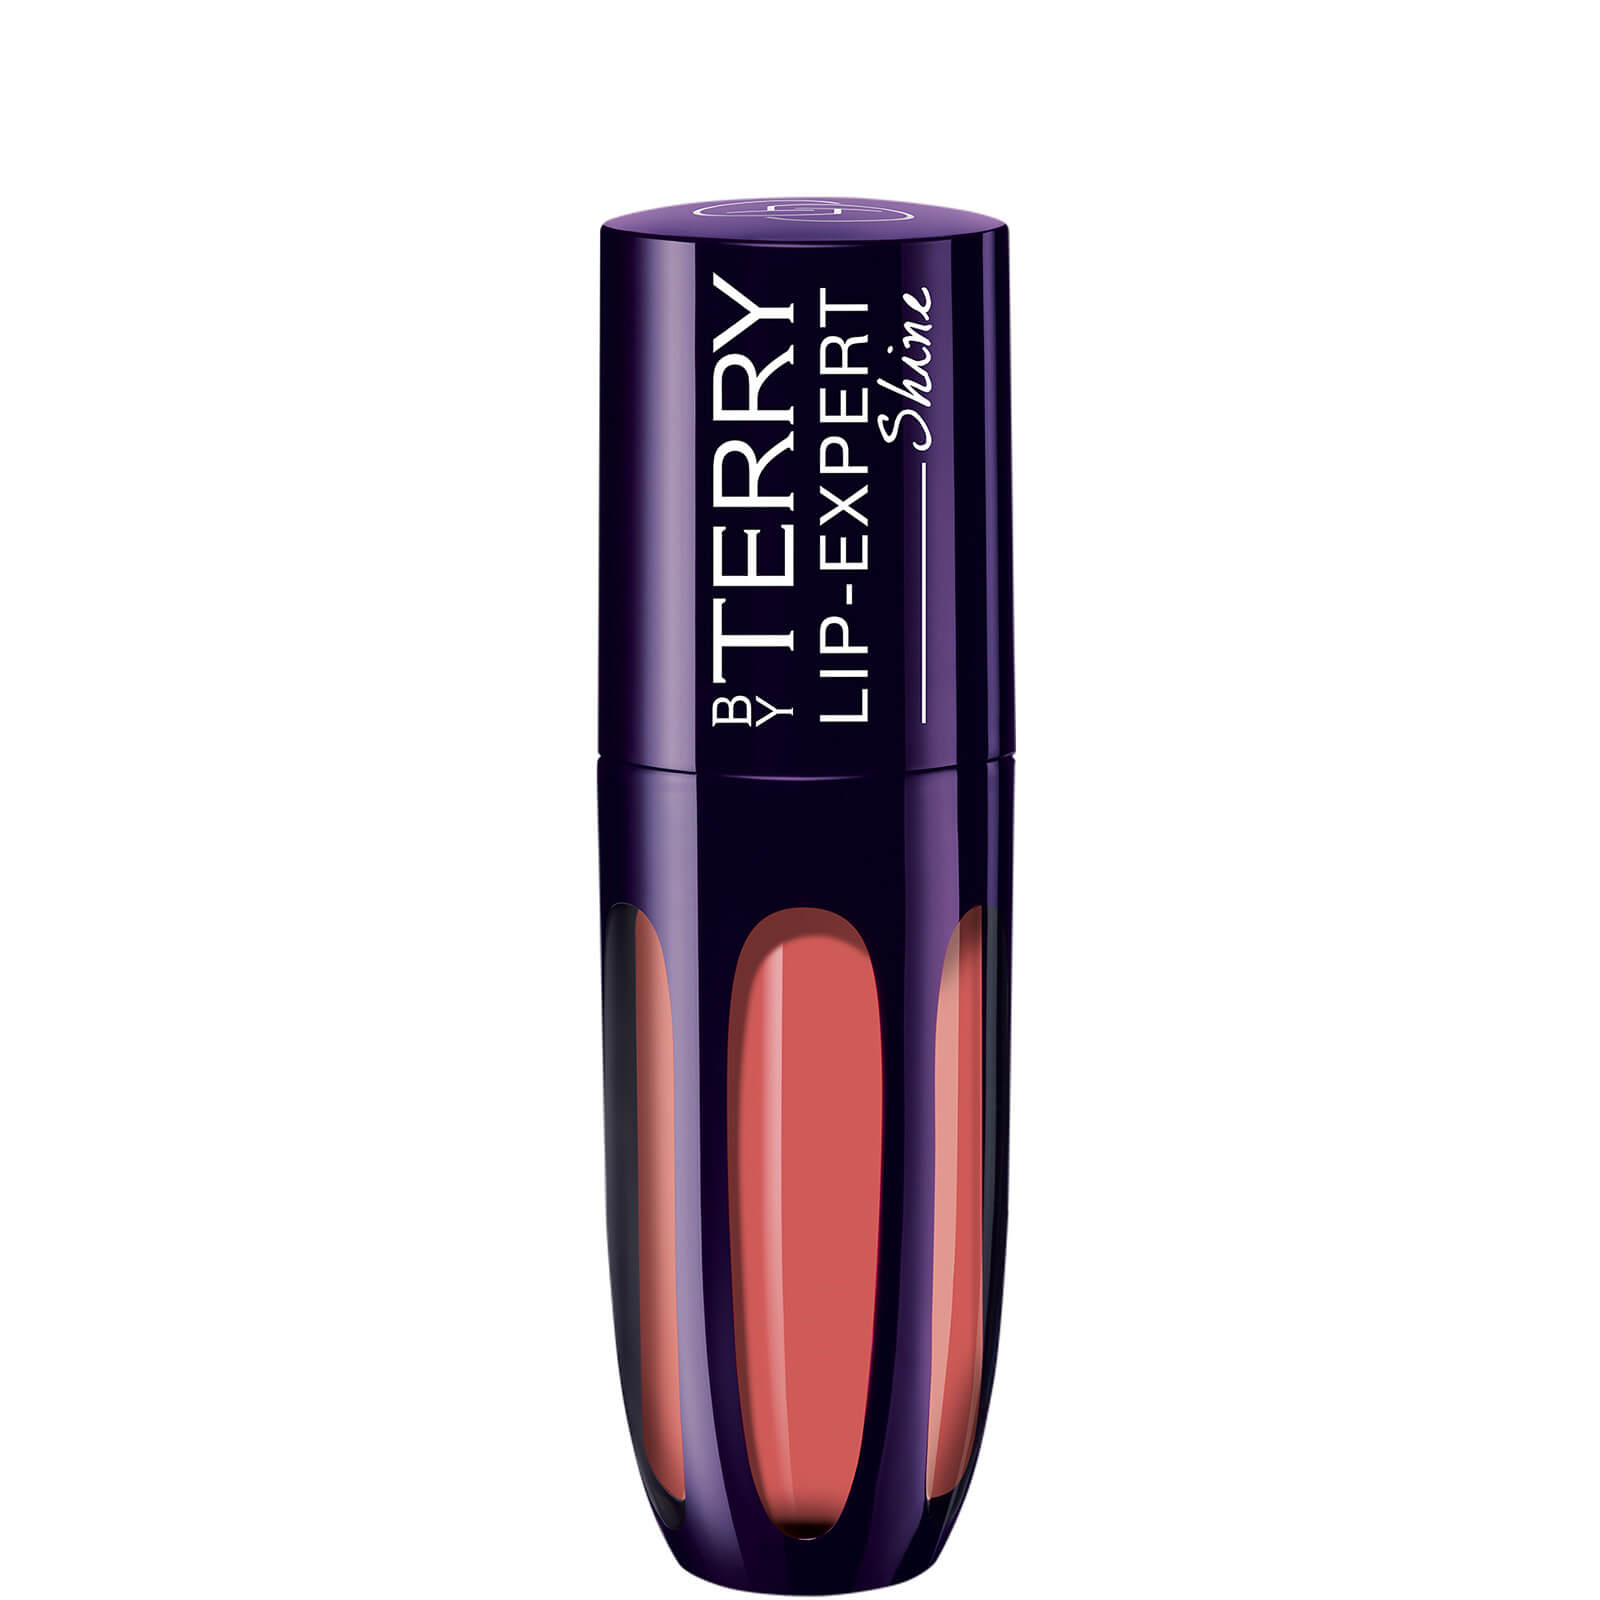 By Terry LIP-EXPERT SHINE Liquid Lipstick (Various Shades) - N.9 Peachy Guilt